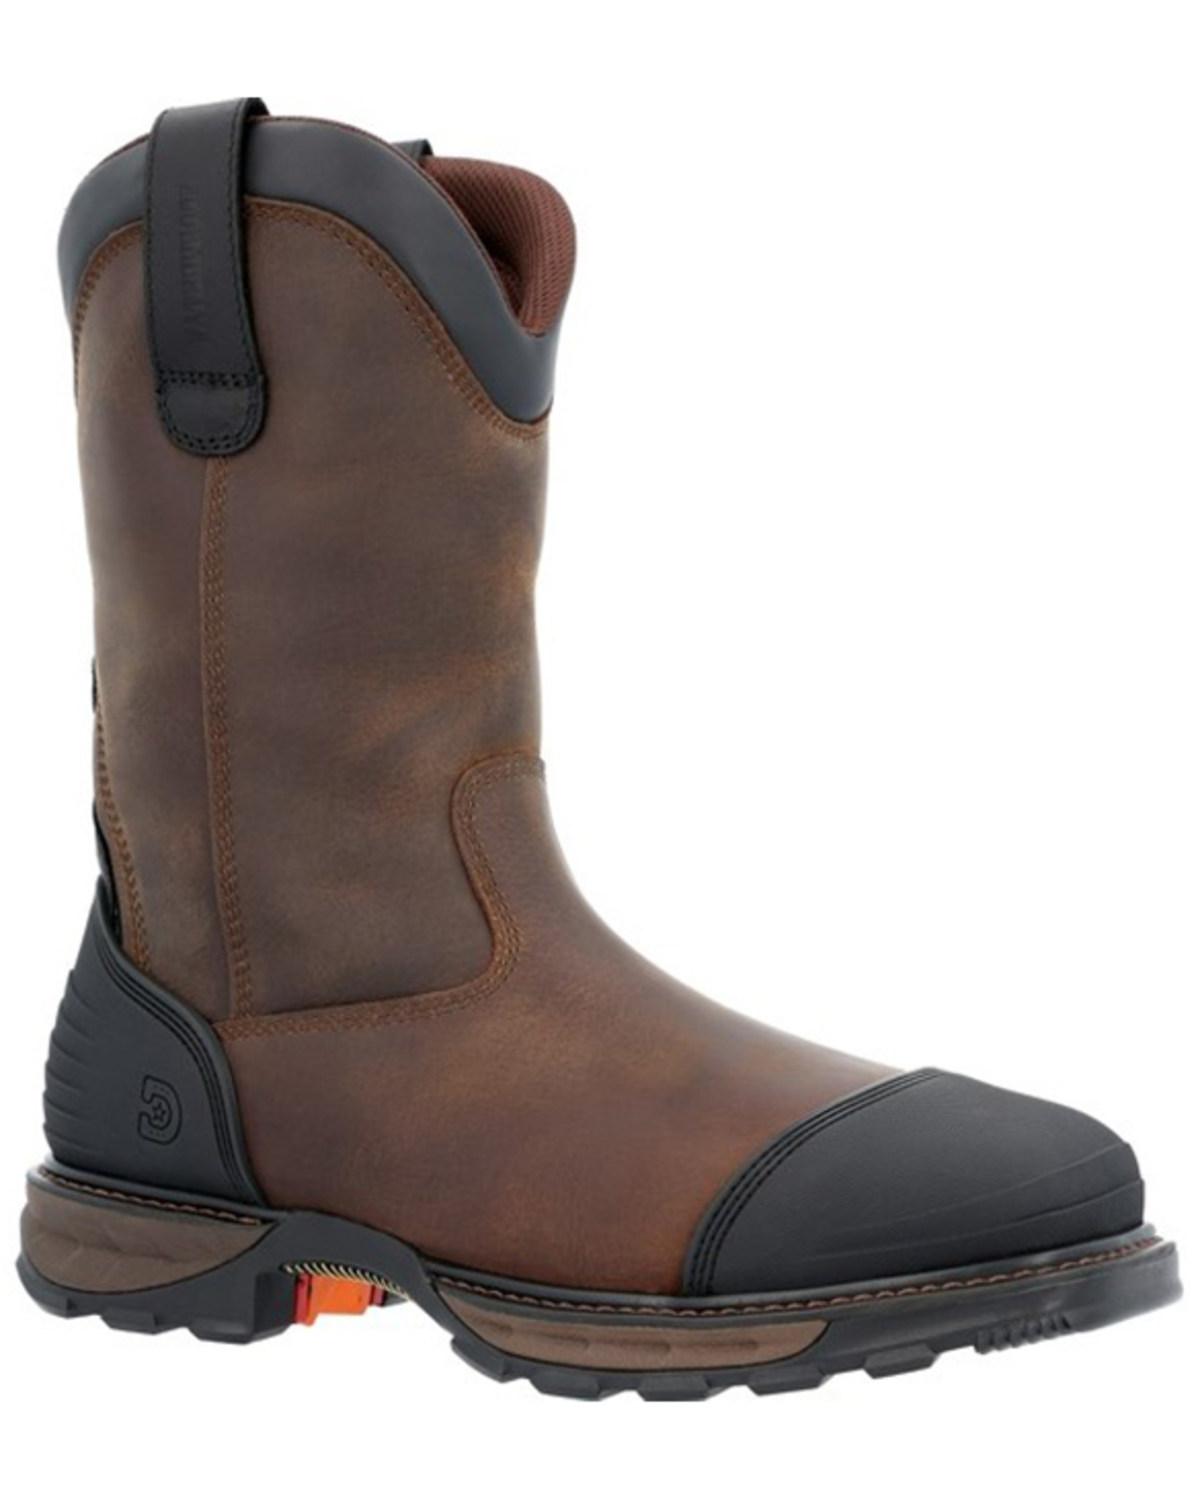 Durango Men's 11" Waterproof Western Work Boots - Steel Toe